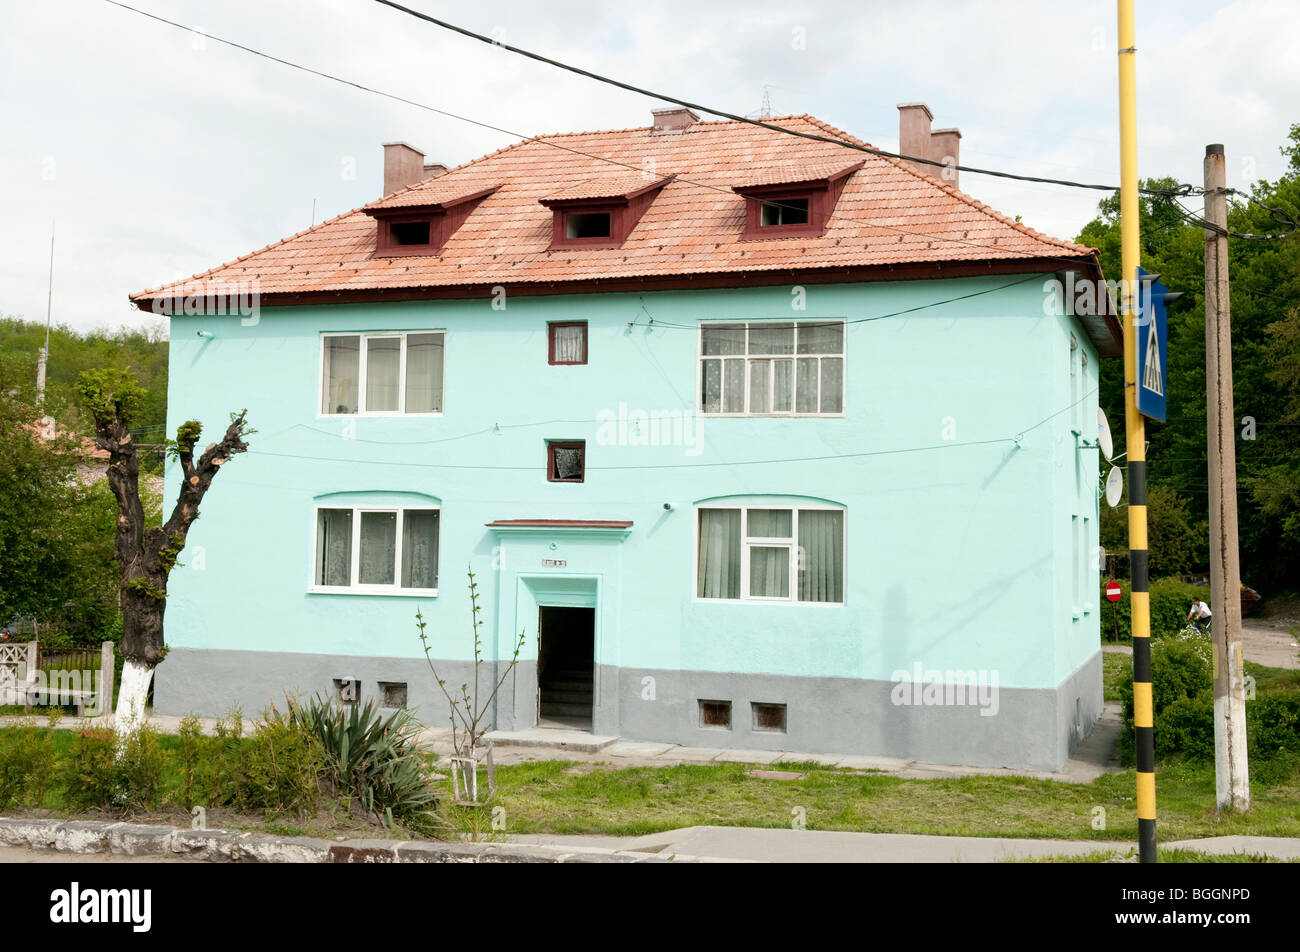 Casa pintada en colores brillantes en Copsa Mica Rumania para intentar encubrir la contaminación procedente de la fábrica Carbosin Foto de stock